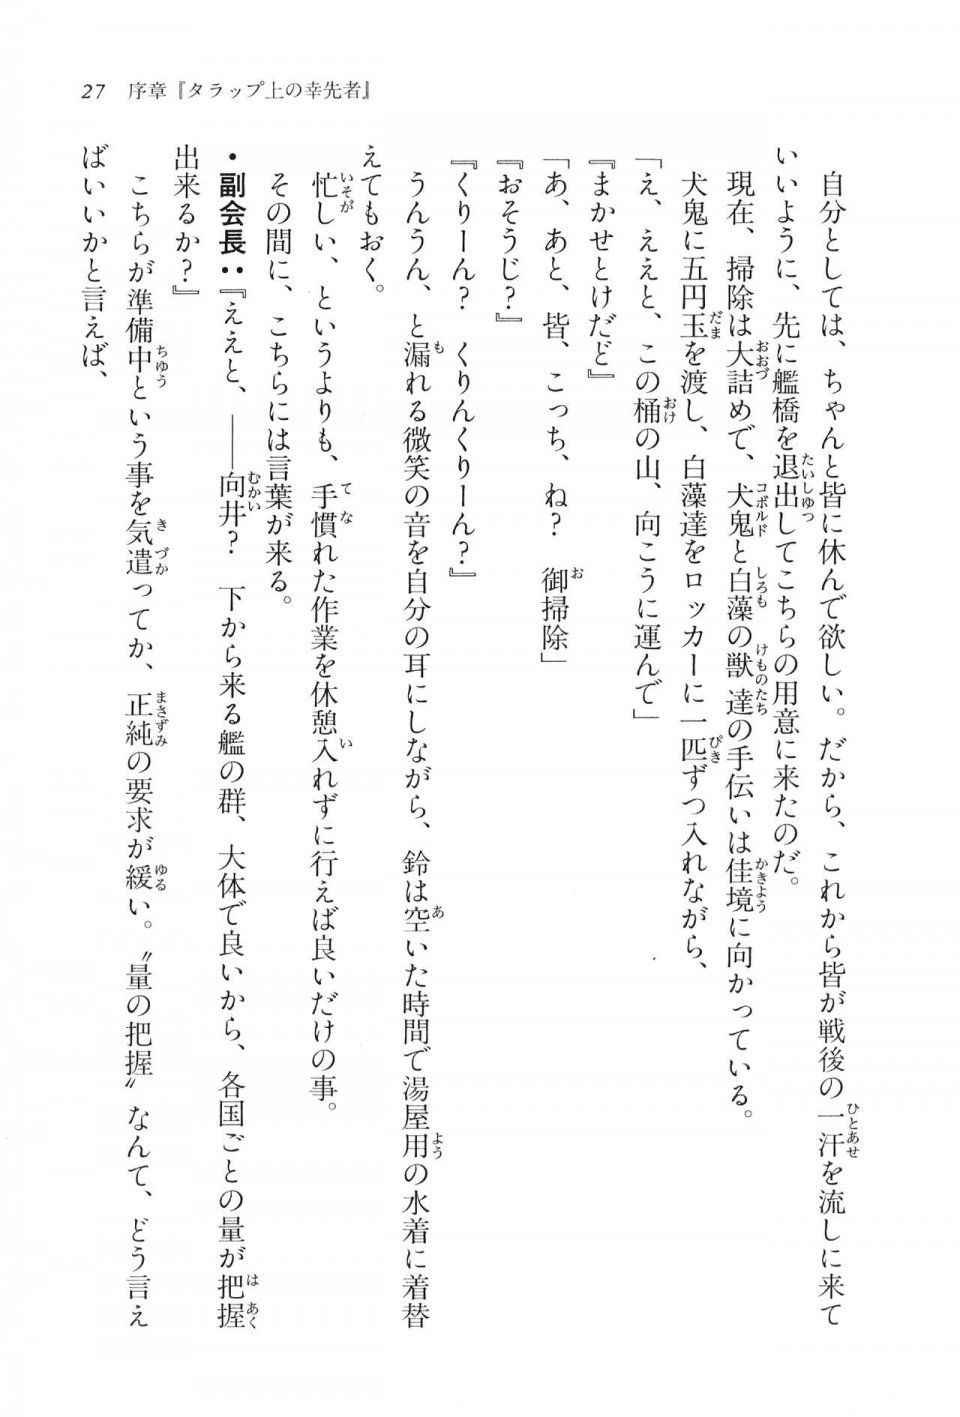 Kyoukai Senjou no Horizon LN Vol 16(7A) - Photo #27